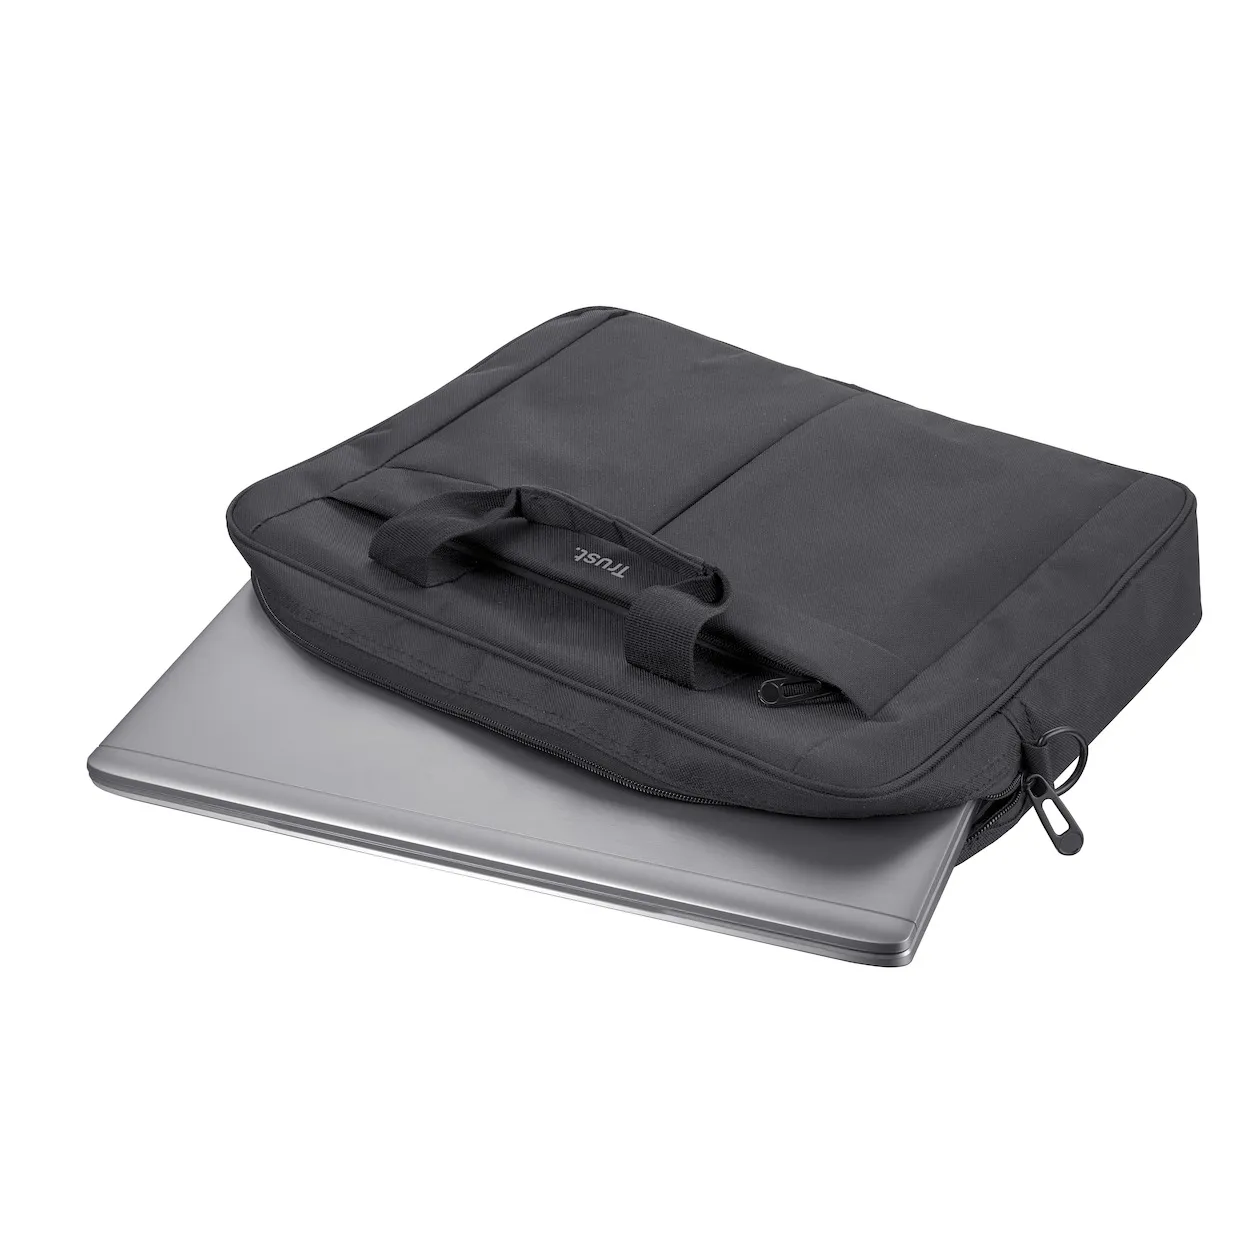 Trust Primo Carry Bag for 16" laptops Zwart